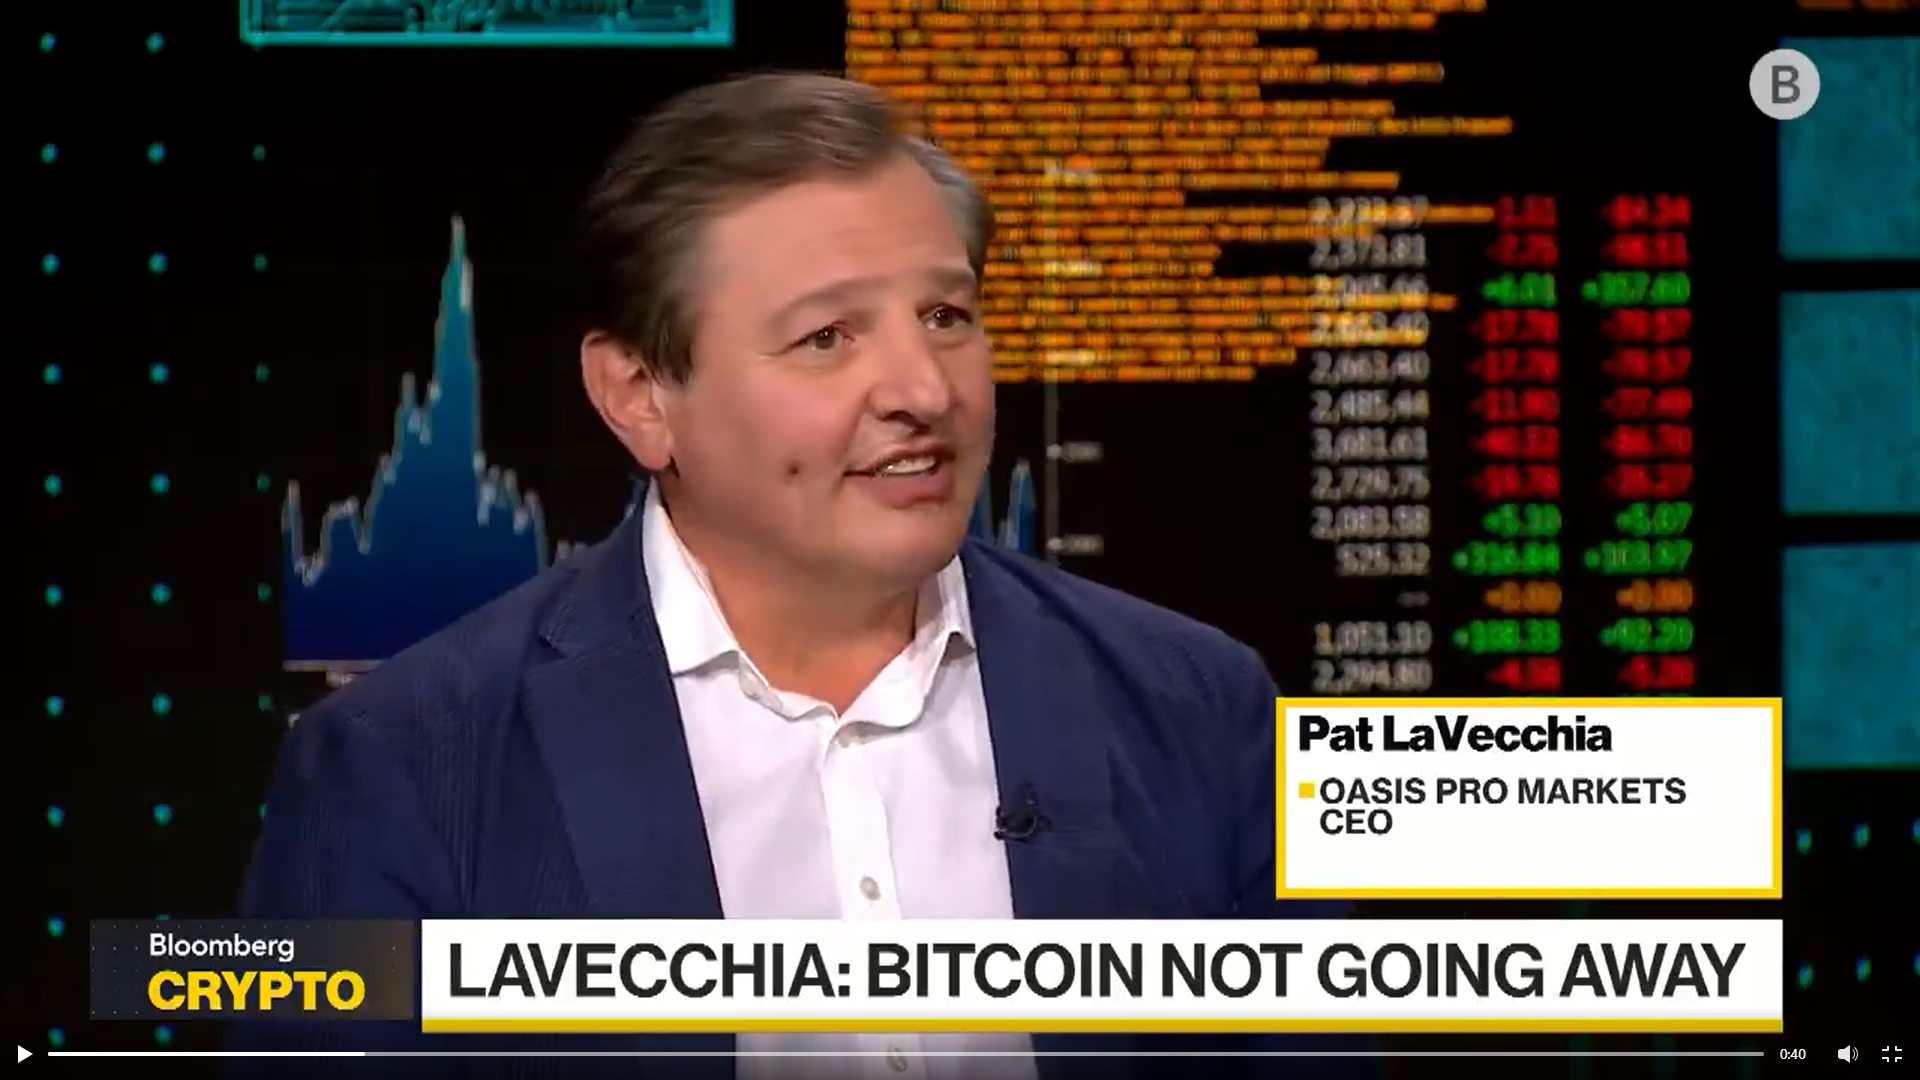 Pat LaVecchia on Bloomberg TV